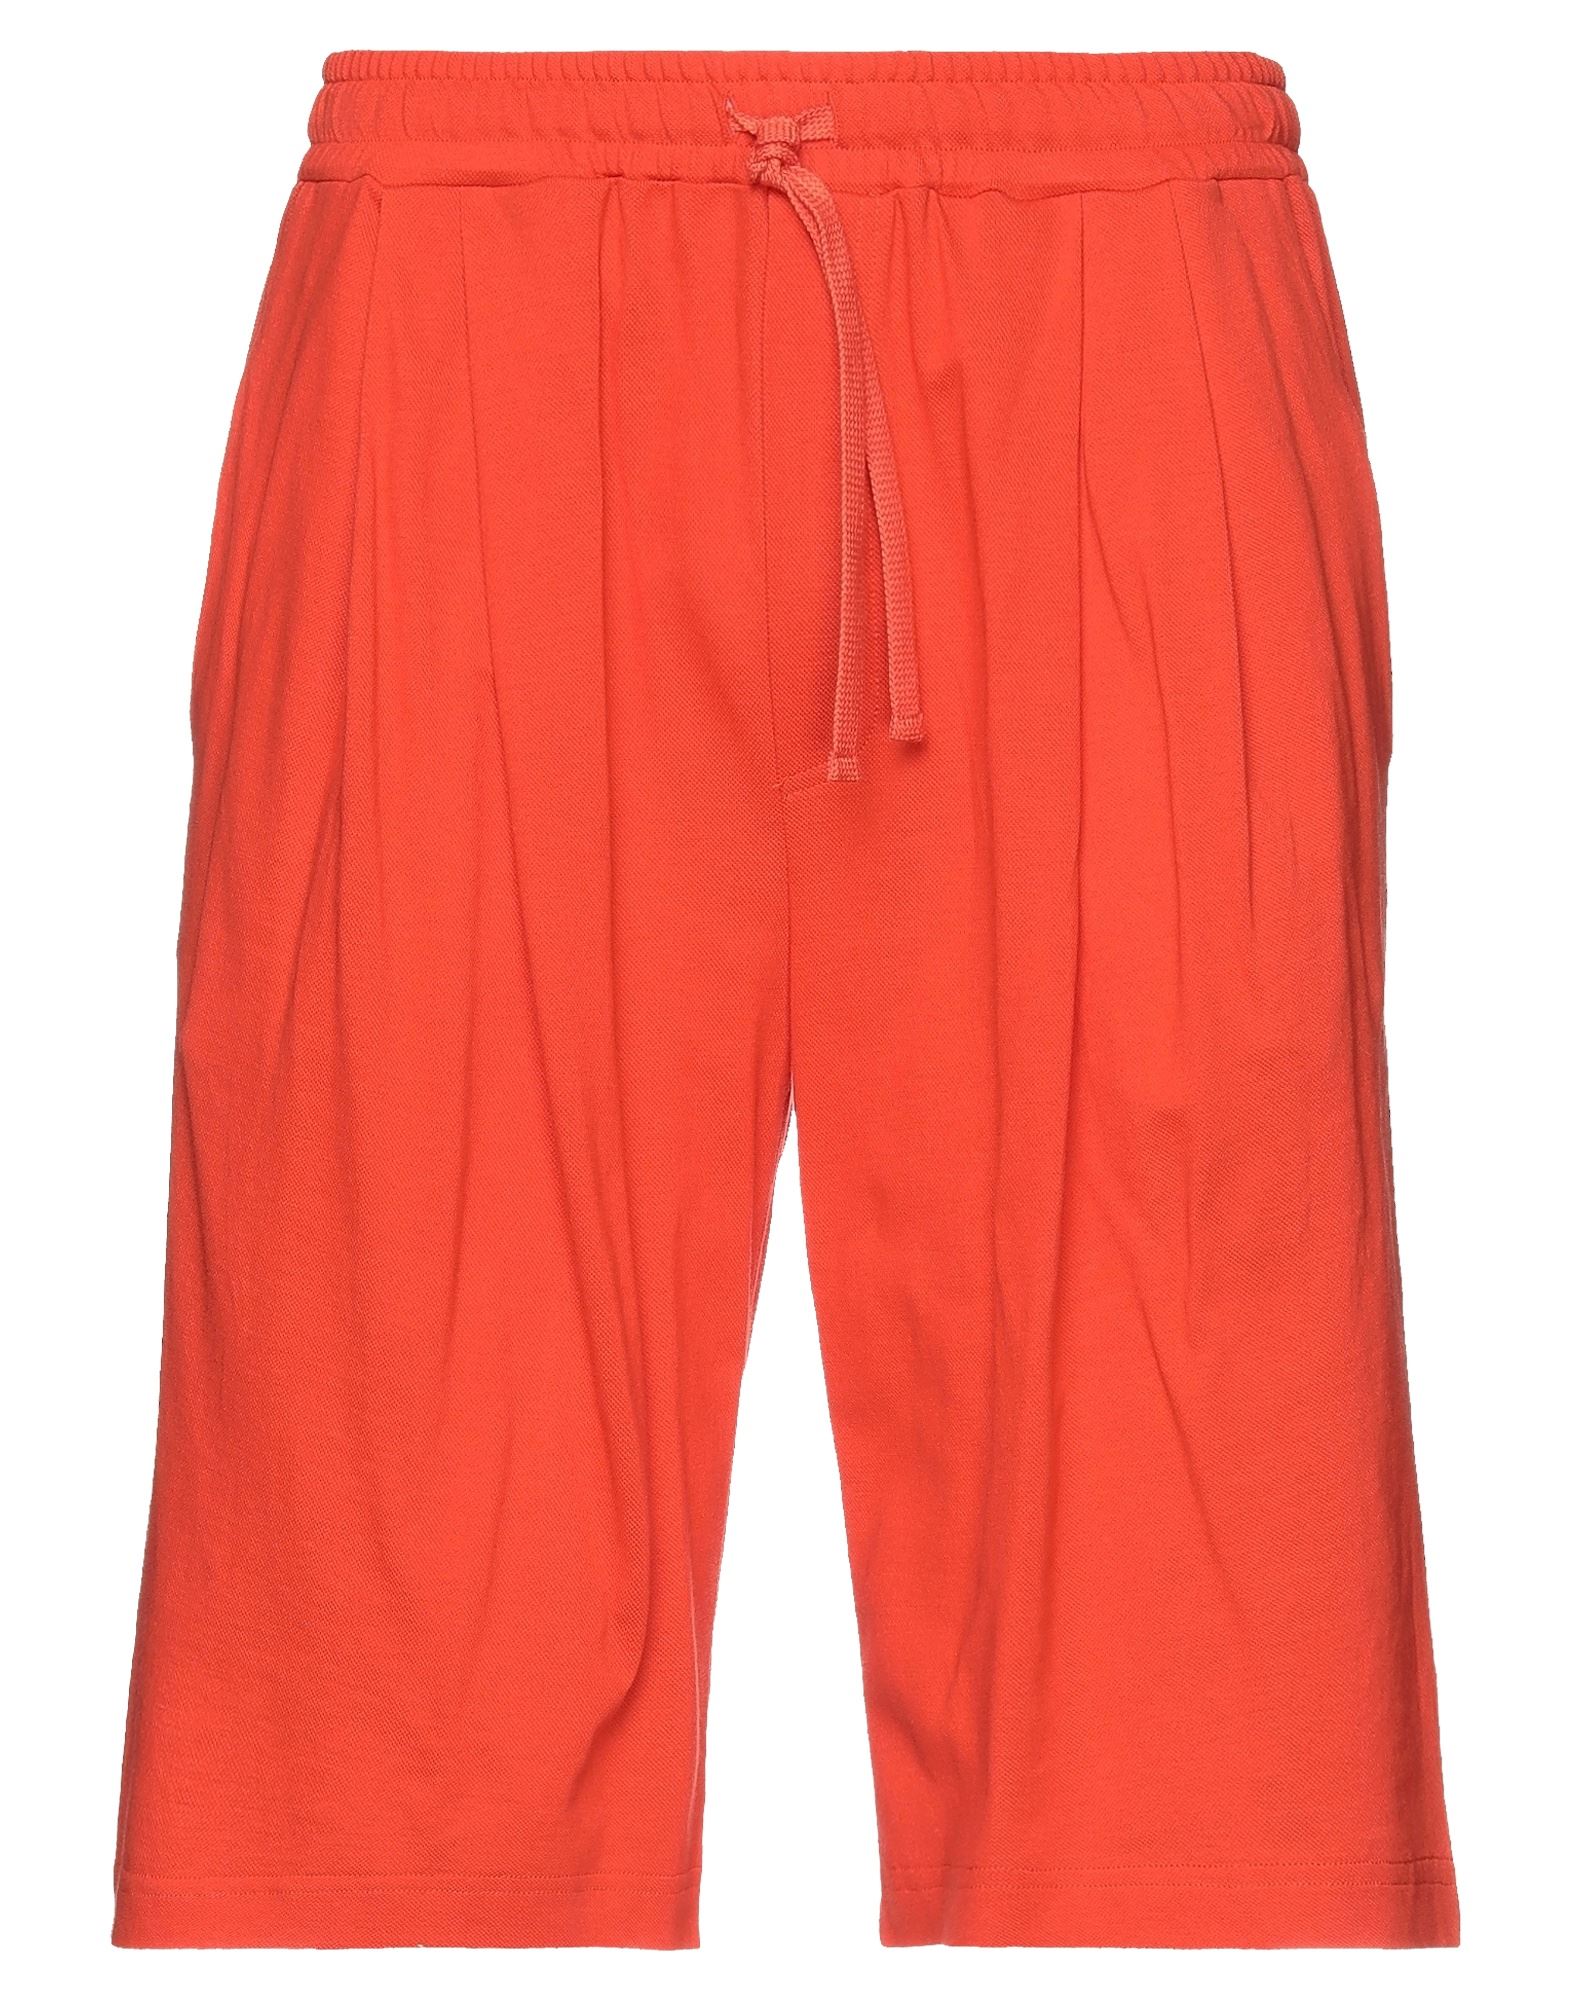 Dolce & Gabbana Man Shorts & Bermuda Shorts Orange Size 38 Cotton, Viscose